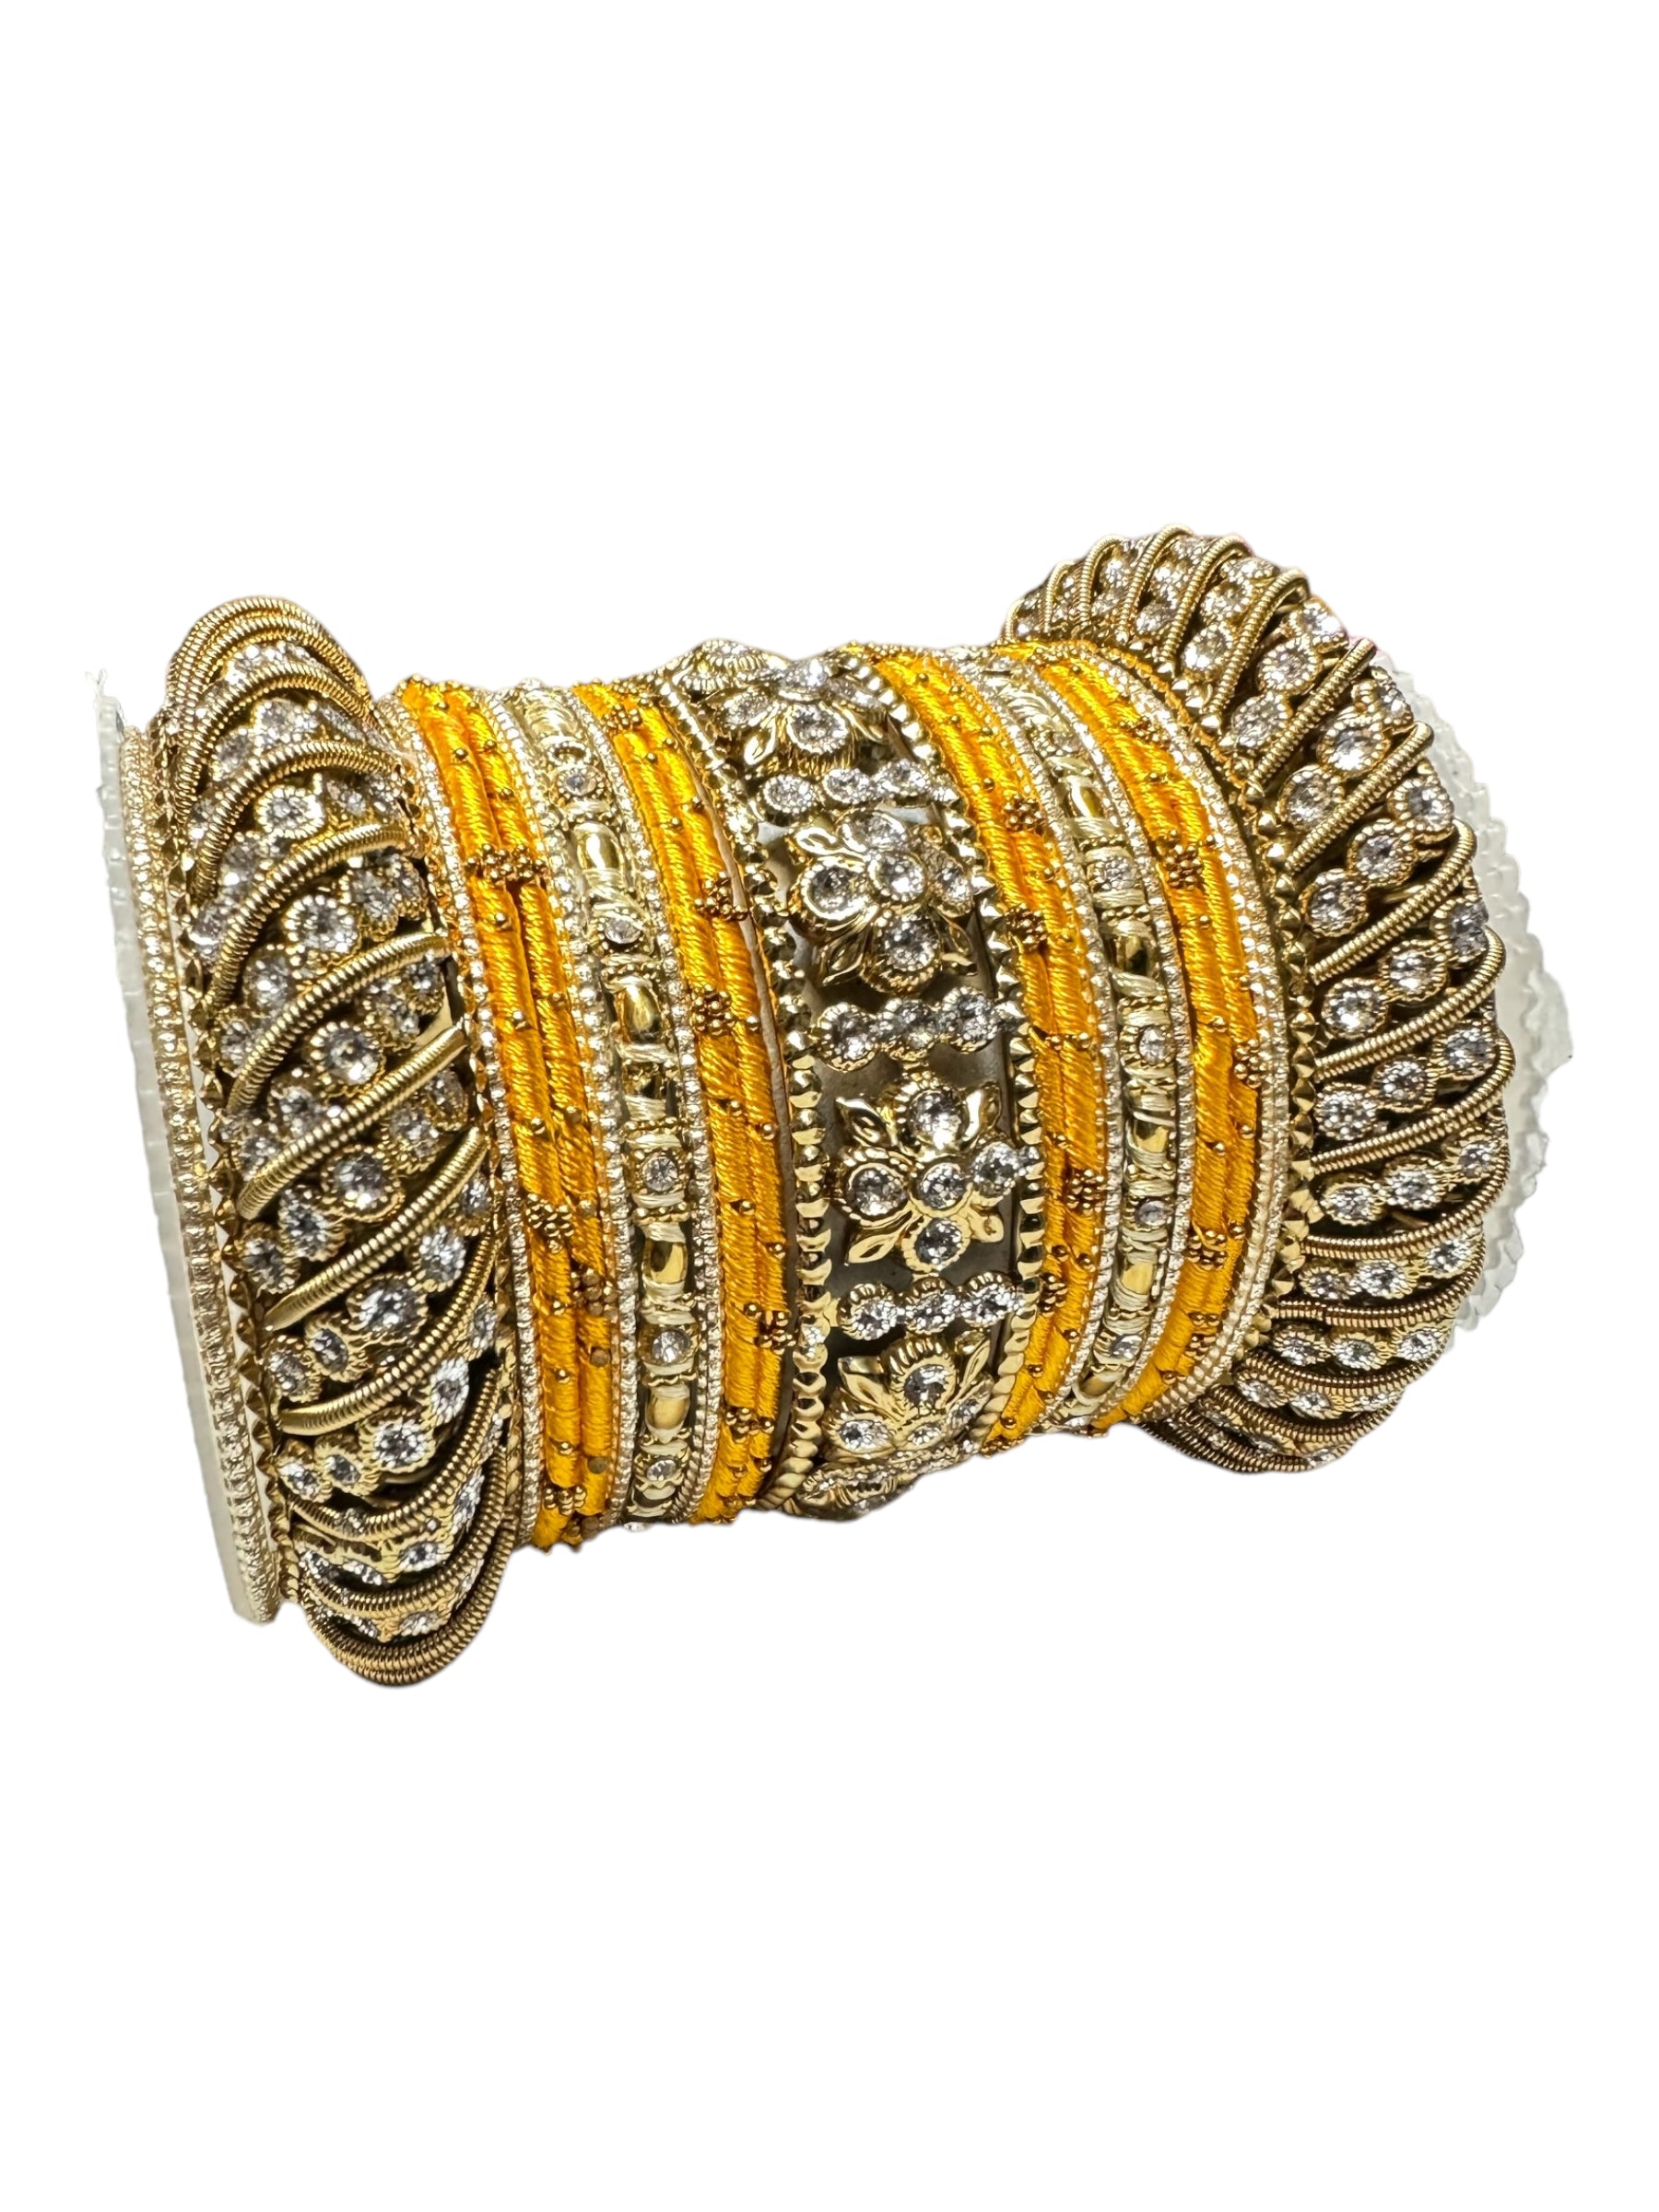 1065  Premium Indian Jewelry Metal Bangle Kangan Set Red Peach Gold Greeen Pink Blue